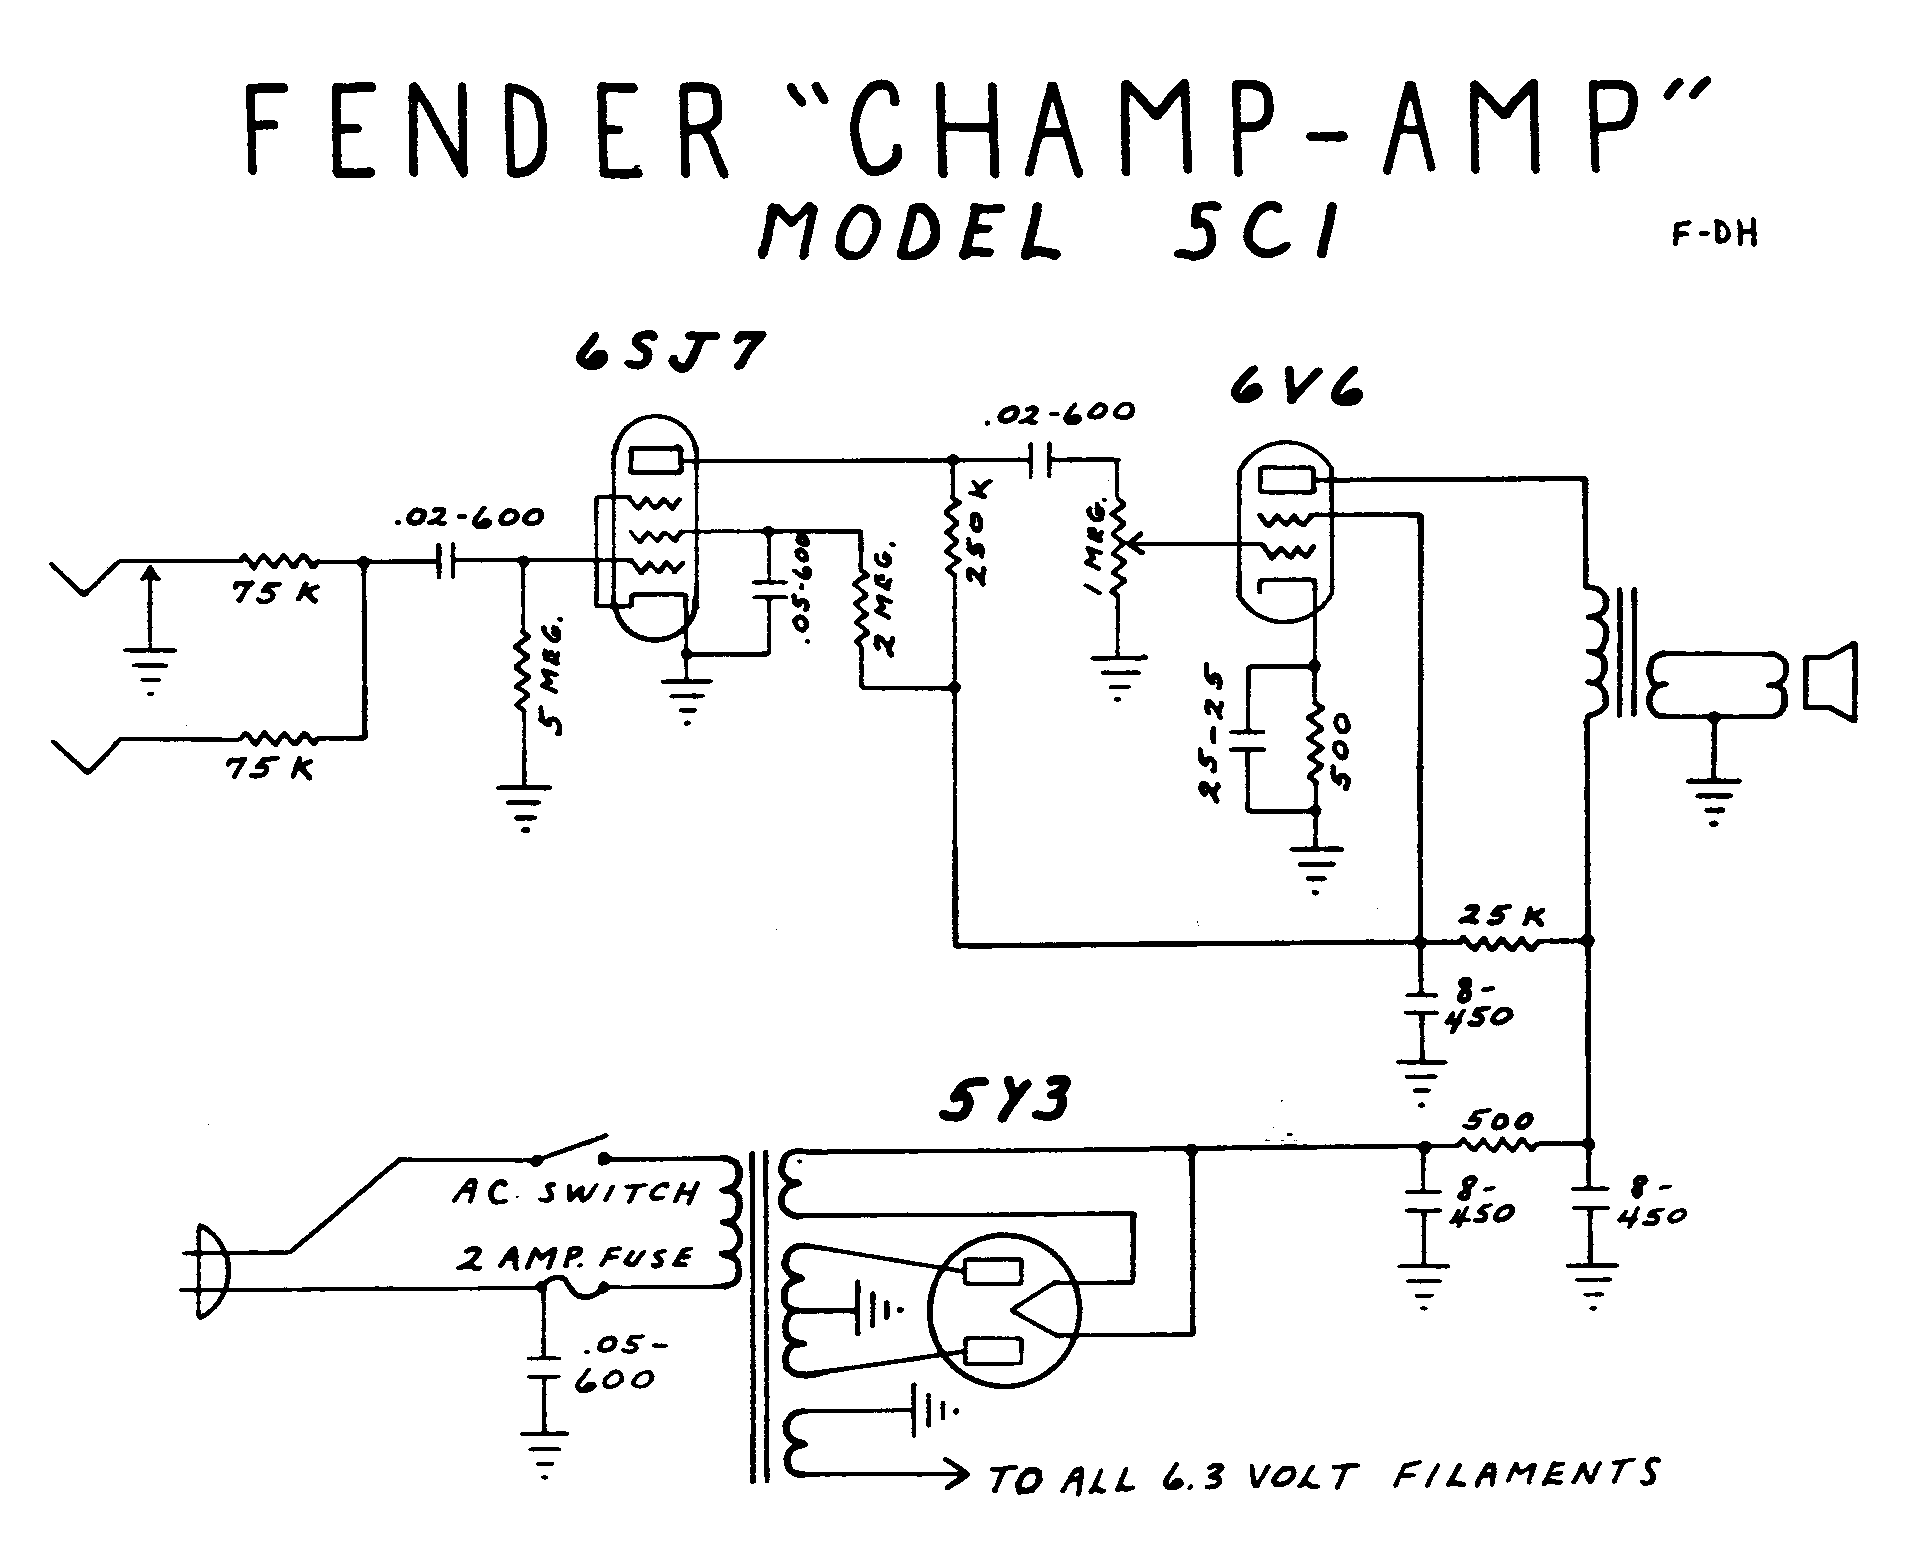 Fender Champ Amp 5C1 Schematic